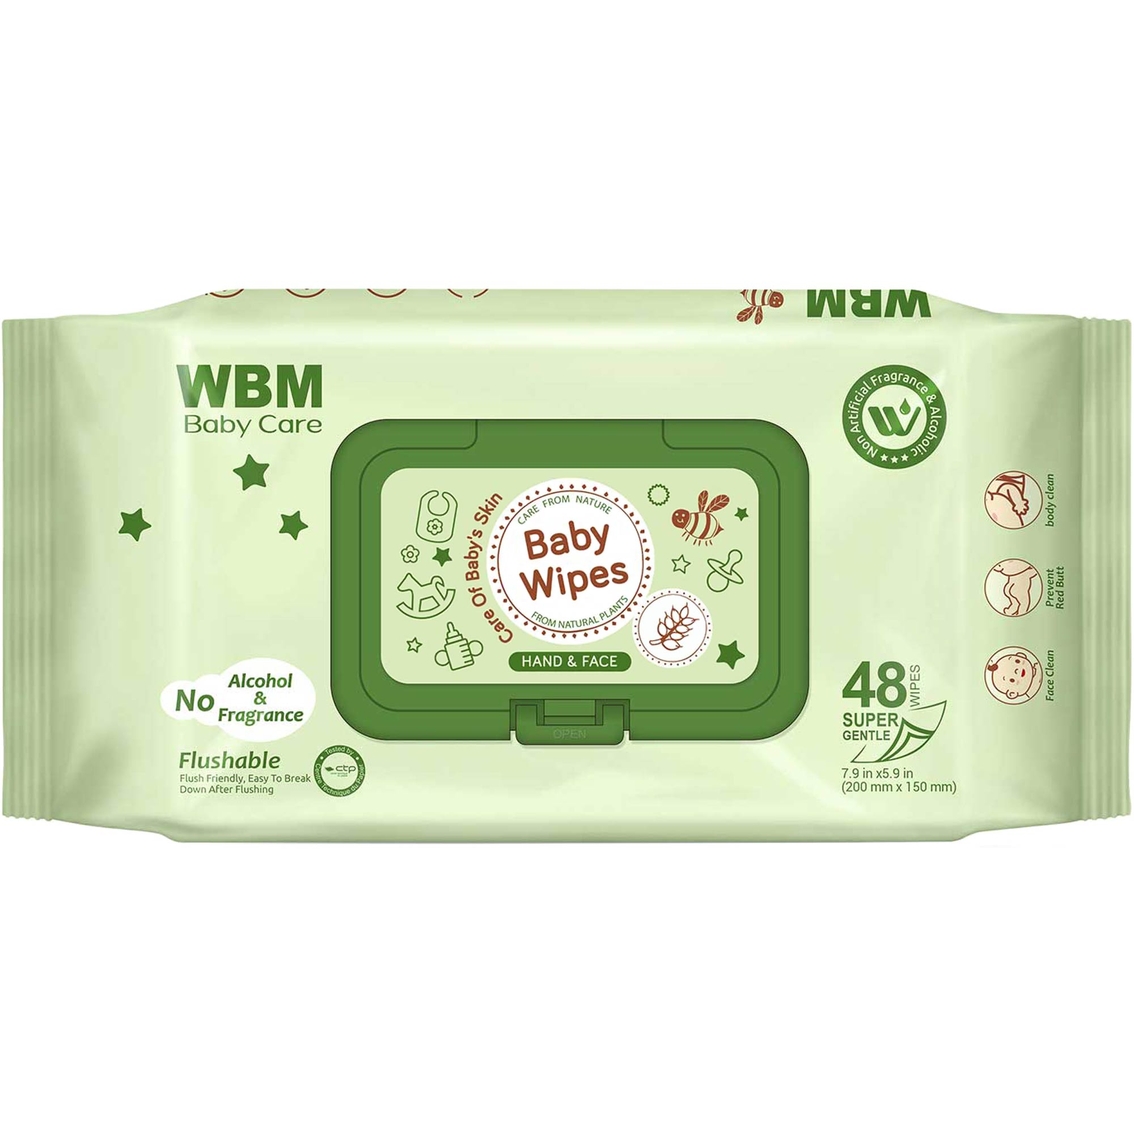 WBM Care Baby Wet Wipes 48 ct.